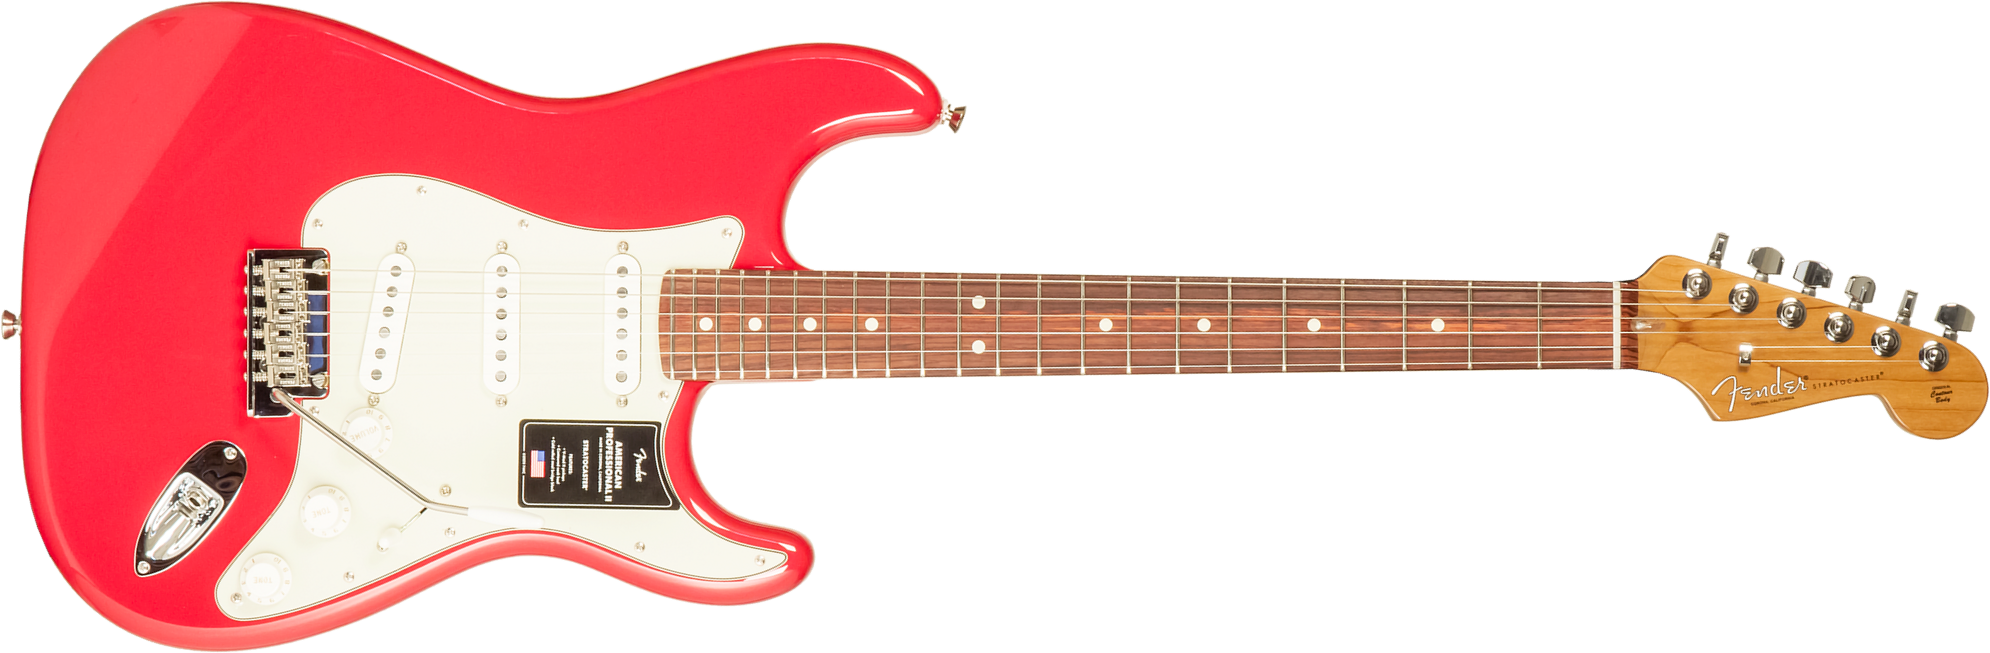 Fender Strat American Professional Ii Ltd Usa 3s Trem Rw - Fiesta Red - Elektrische gitaar in Str-vorm - Main picture